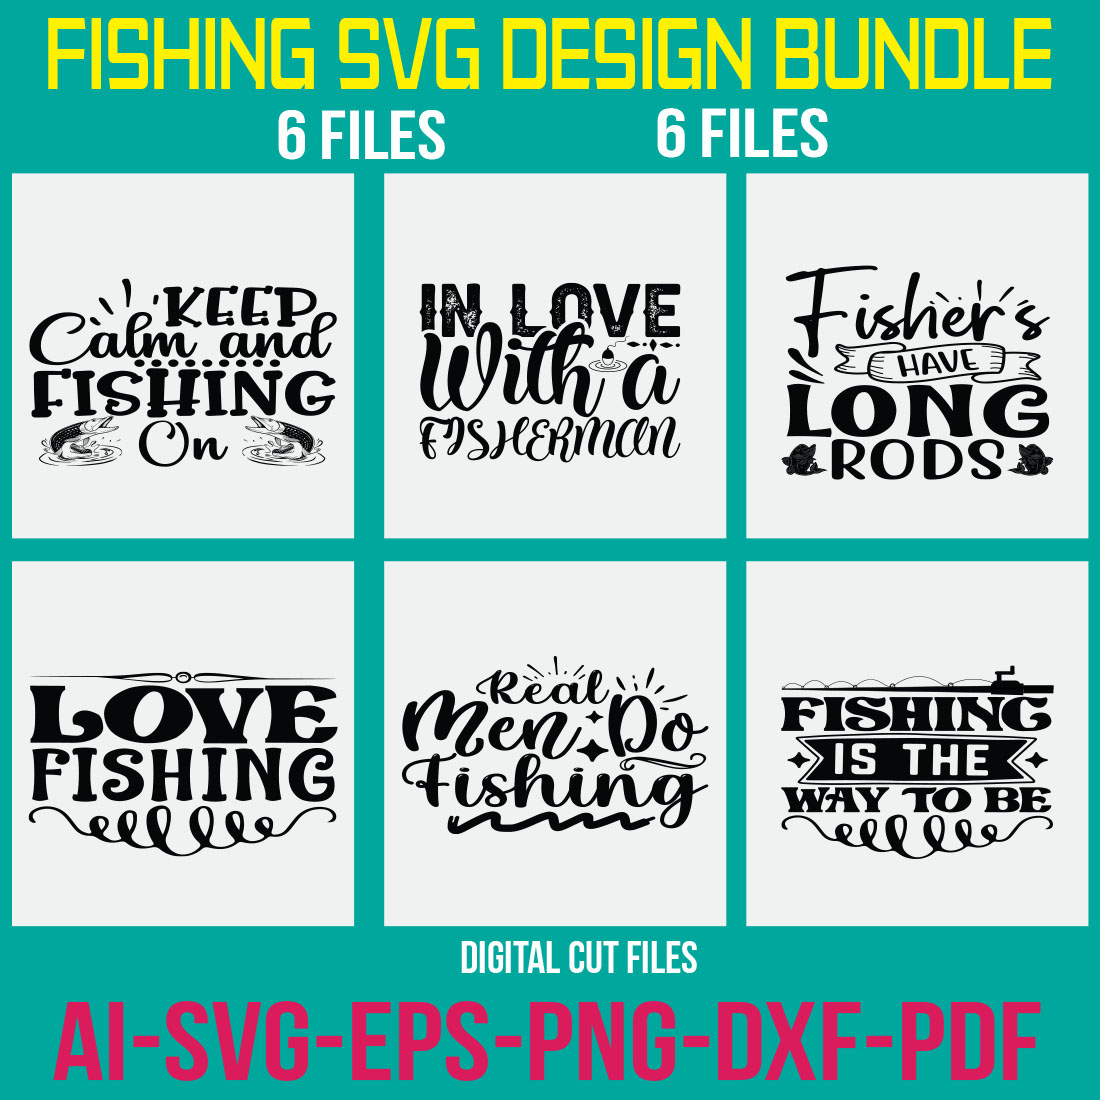 Fishing SVG Design Bundle cover image.